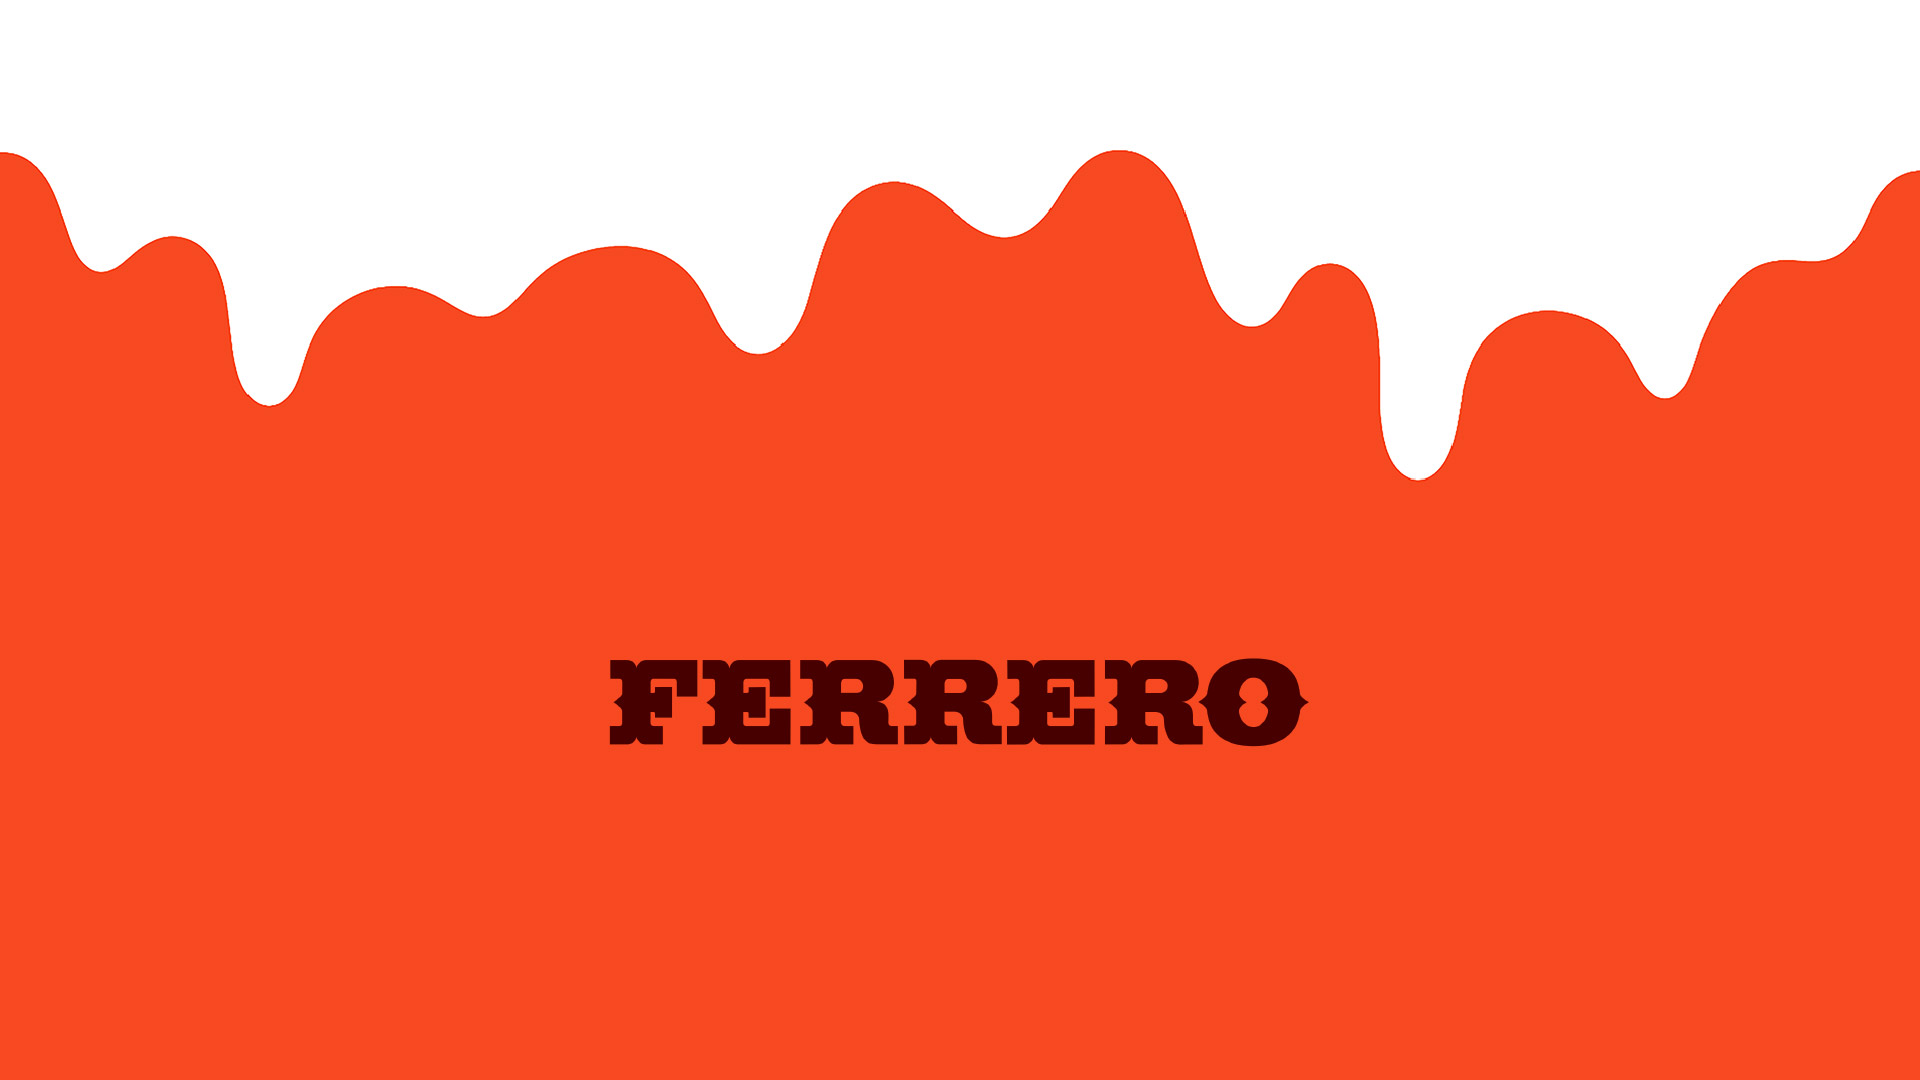 Verpackungen Kinderüberraschung – Ferrero Deutschland GmbH